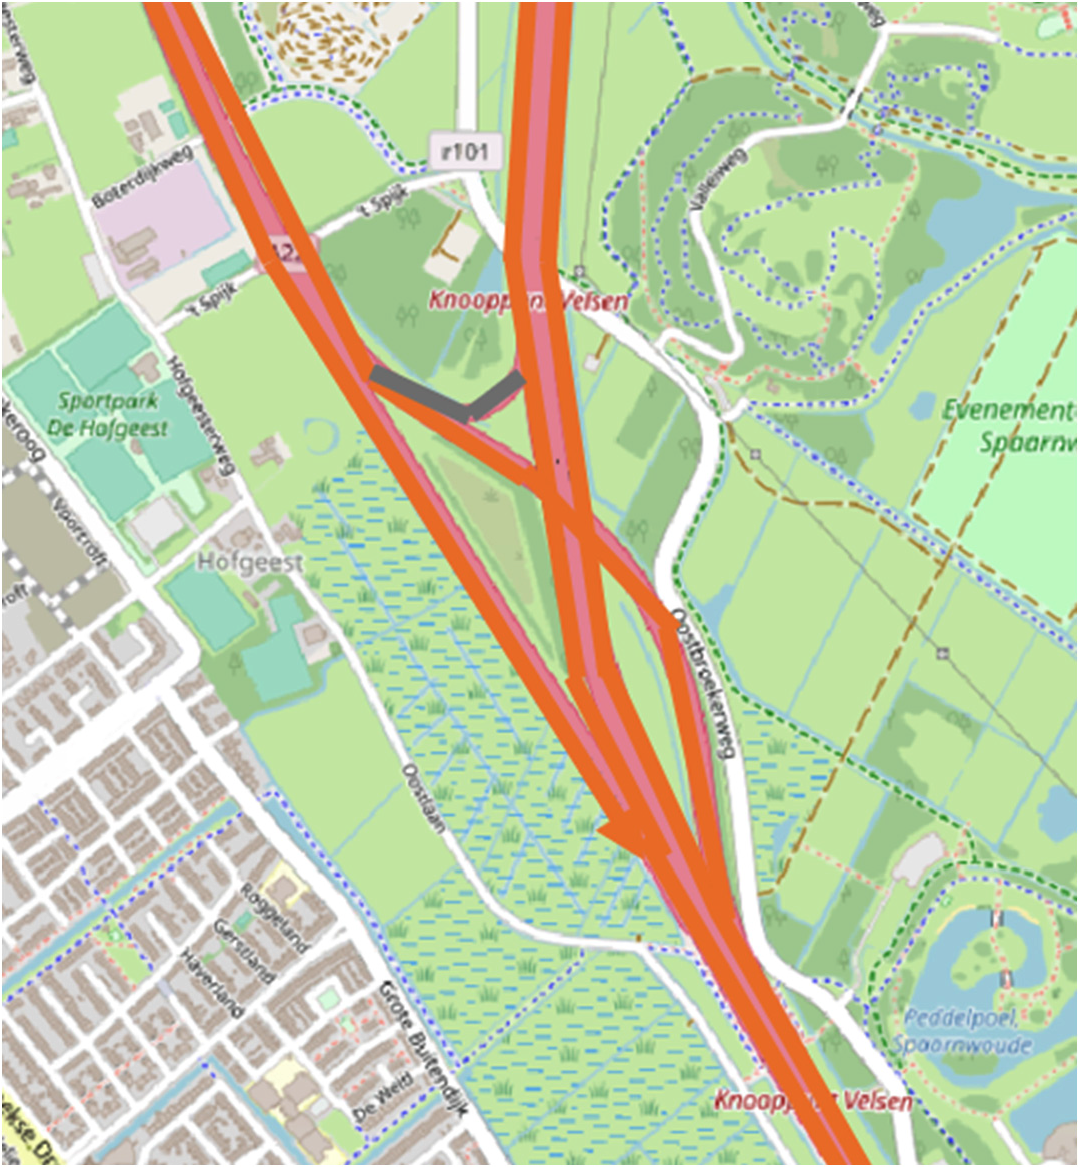 Afbeelding: A22 knooppunt Velsen – knooppunt Beverwijk (oranje is heffingsplichtig; het grijs gearceerde – niet heffingsplichtig – is een calamiteitenboog die voor gewoon verkeer gesloten is).